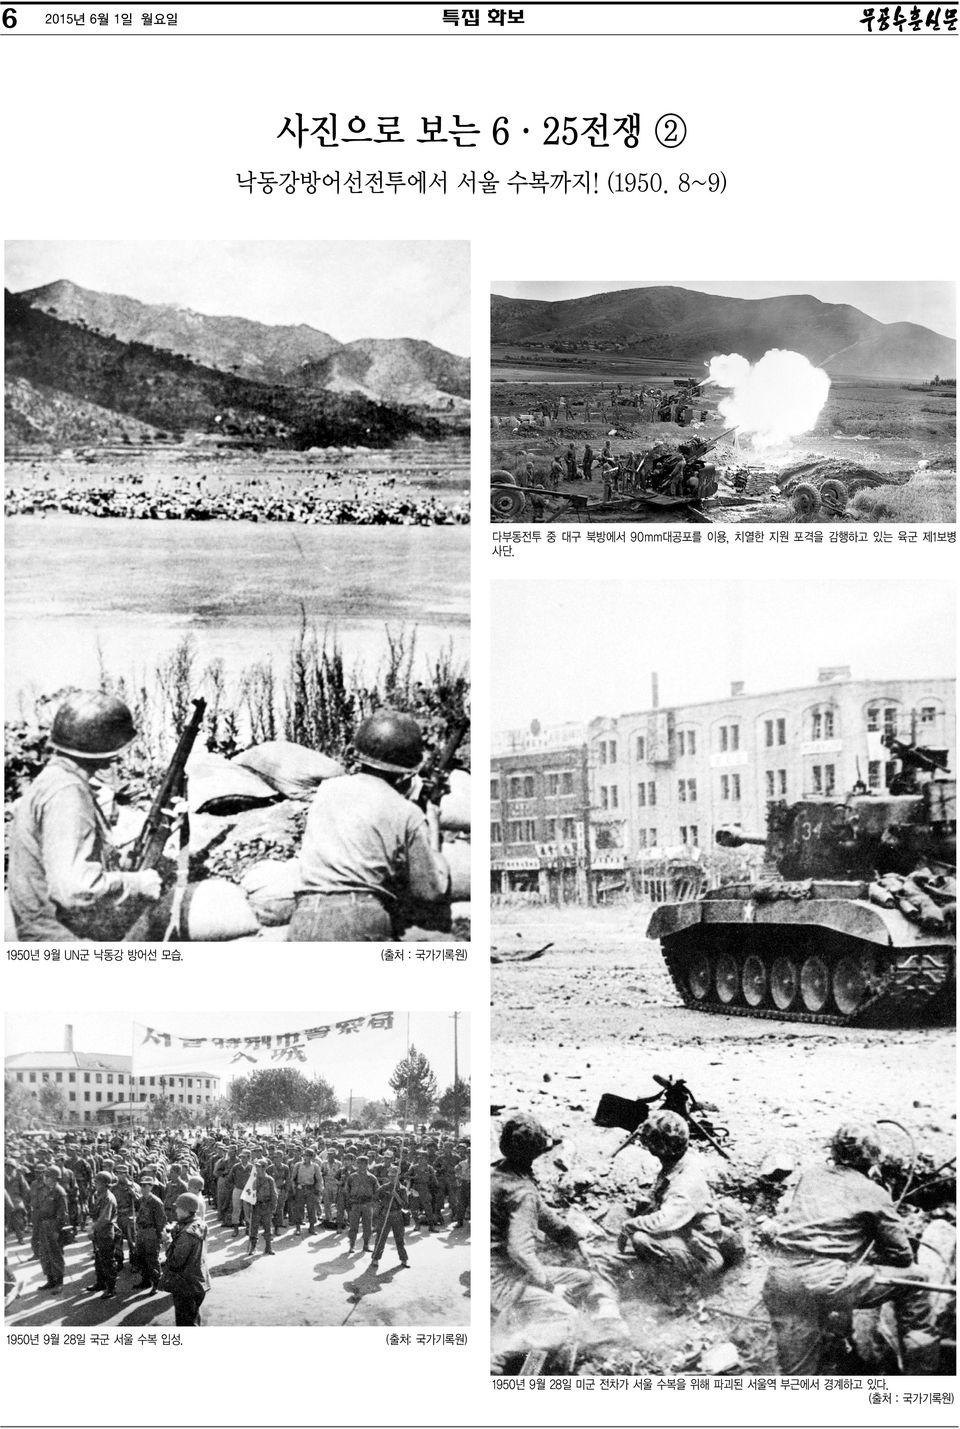 1950년 9월 UN군 낙동강 방어선 모습. (출처 : 국가기록원) 1950년 9월 28일 국군 서울 수복 입성.